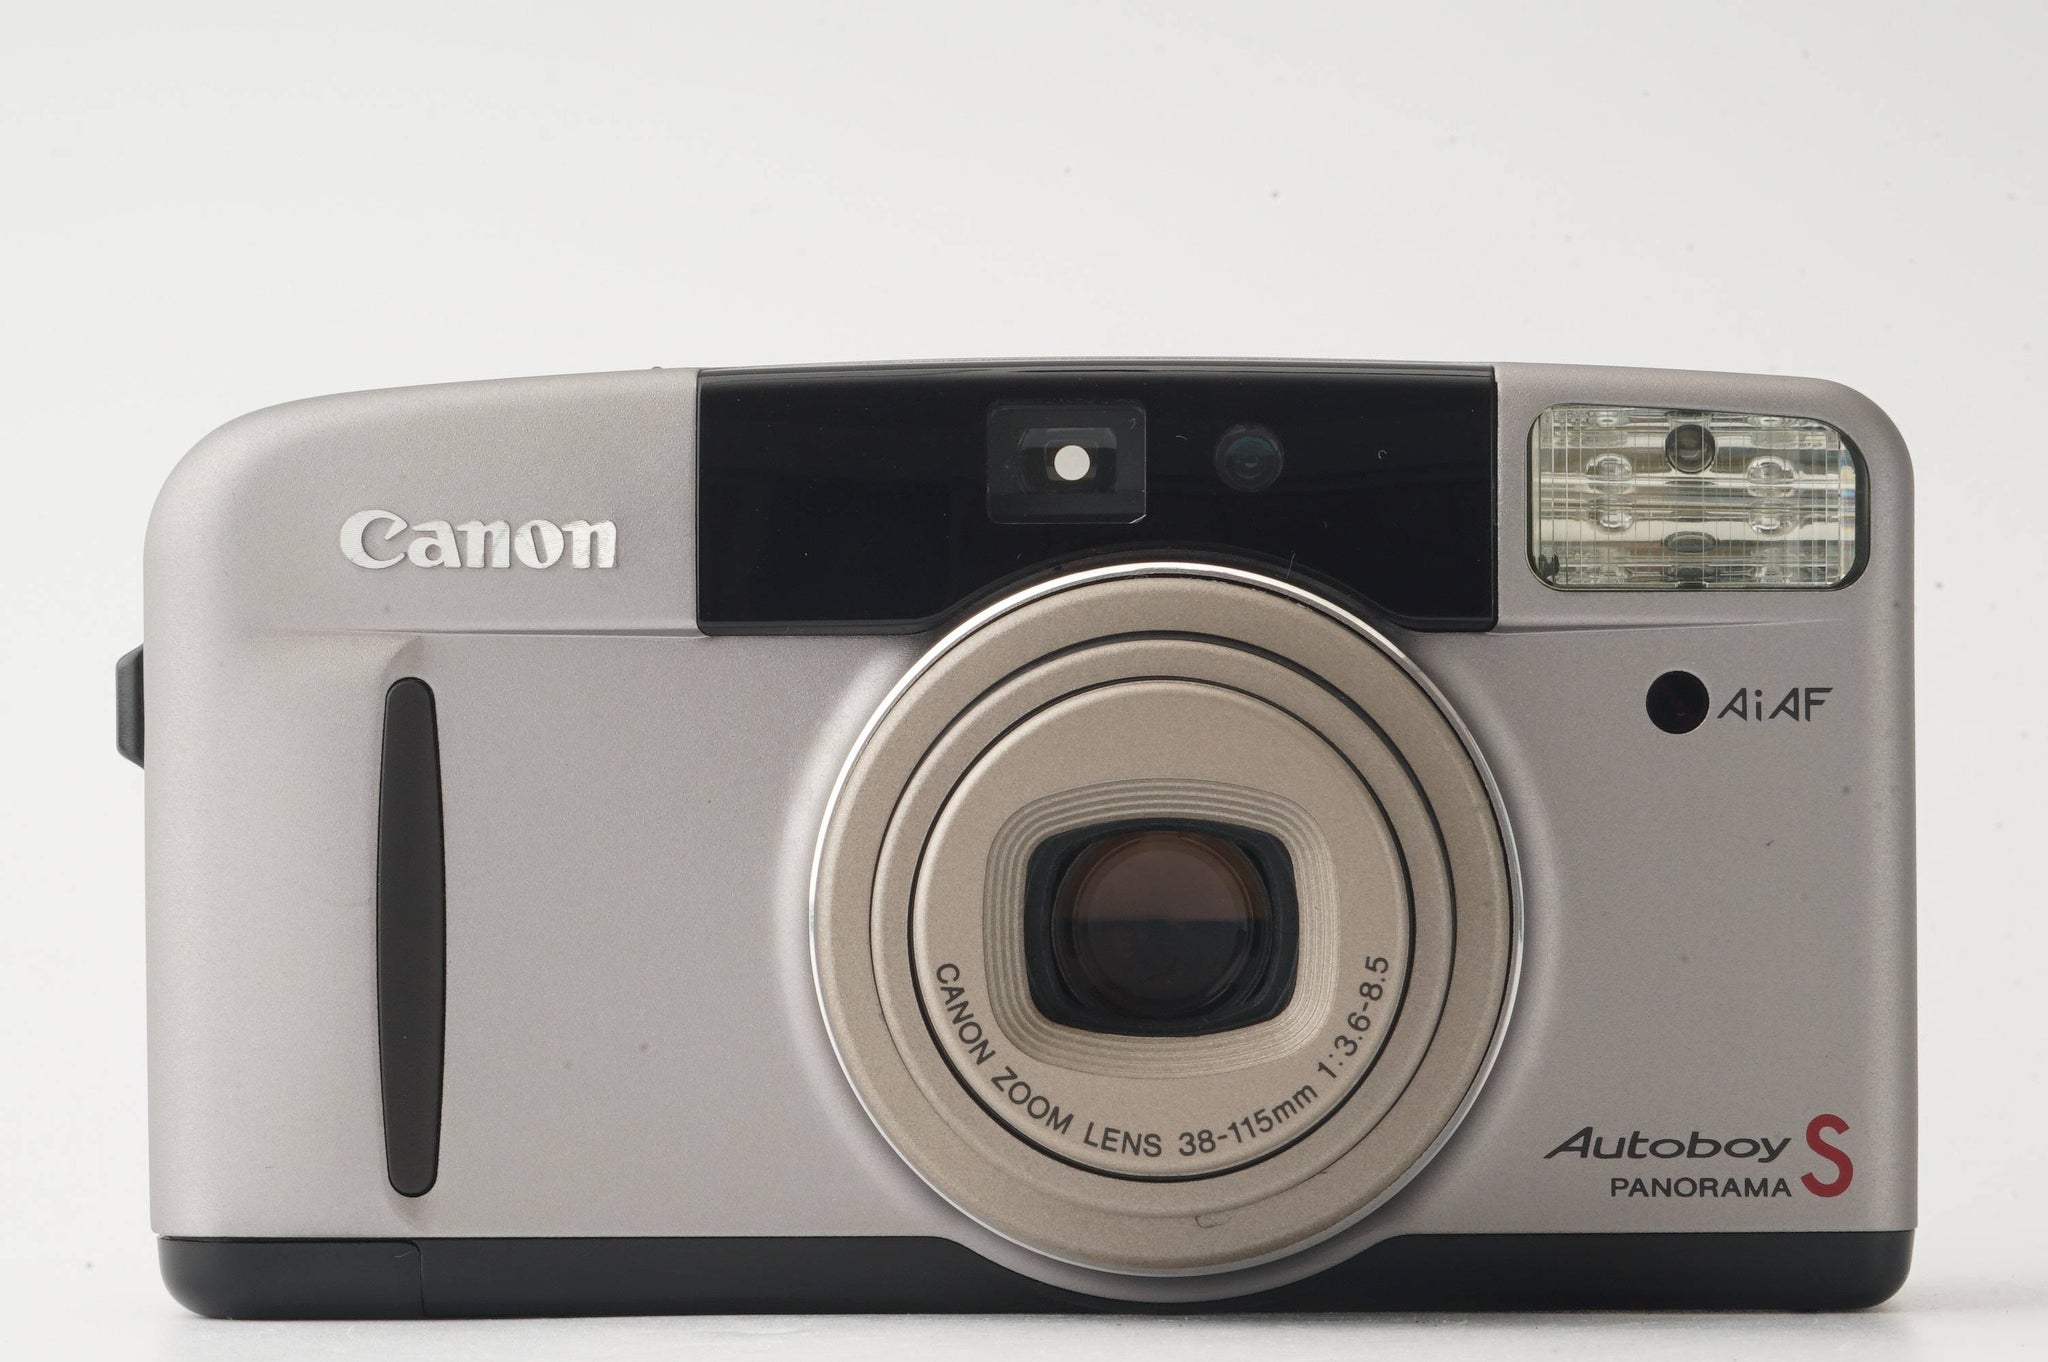 【美品】 Canon キャノン Autoboy S PANORAMA